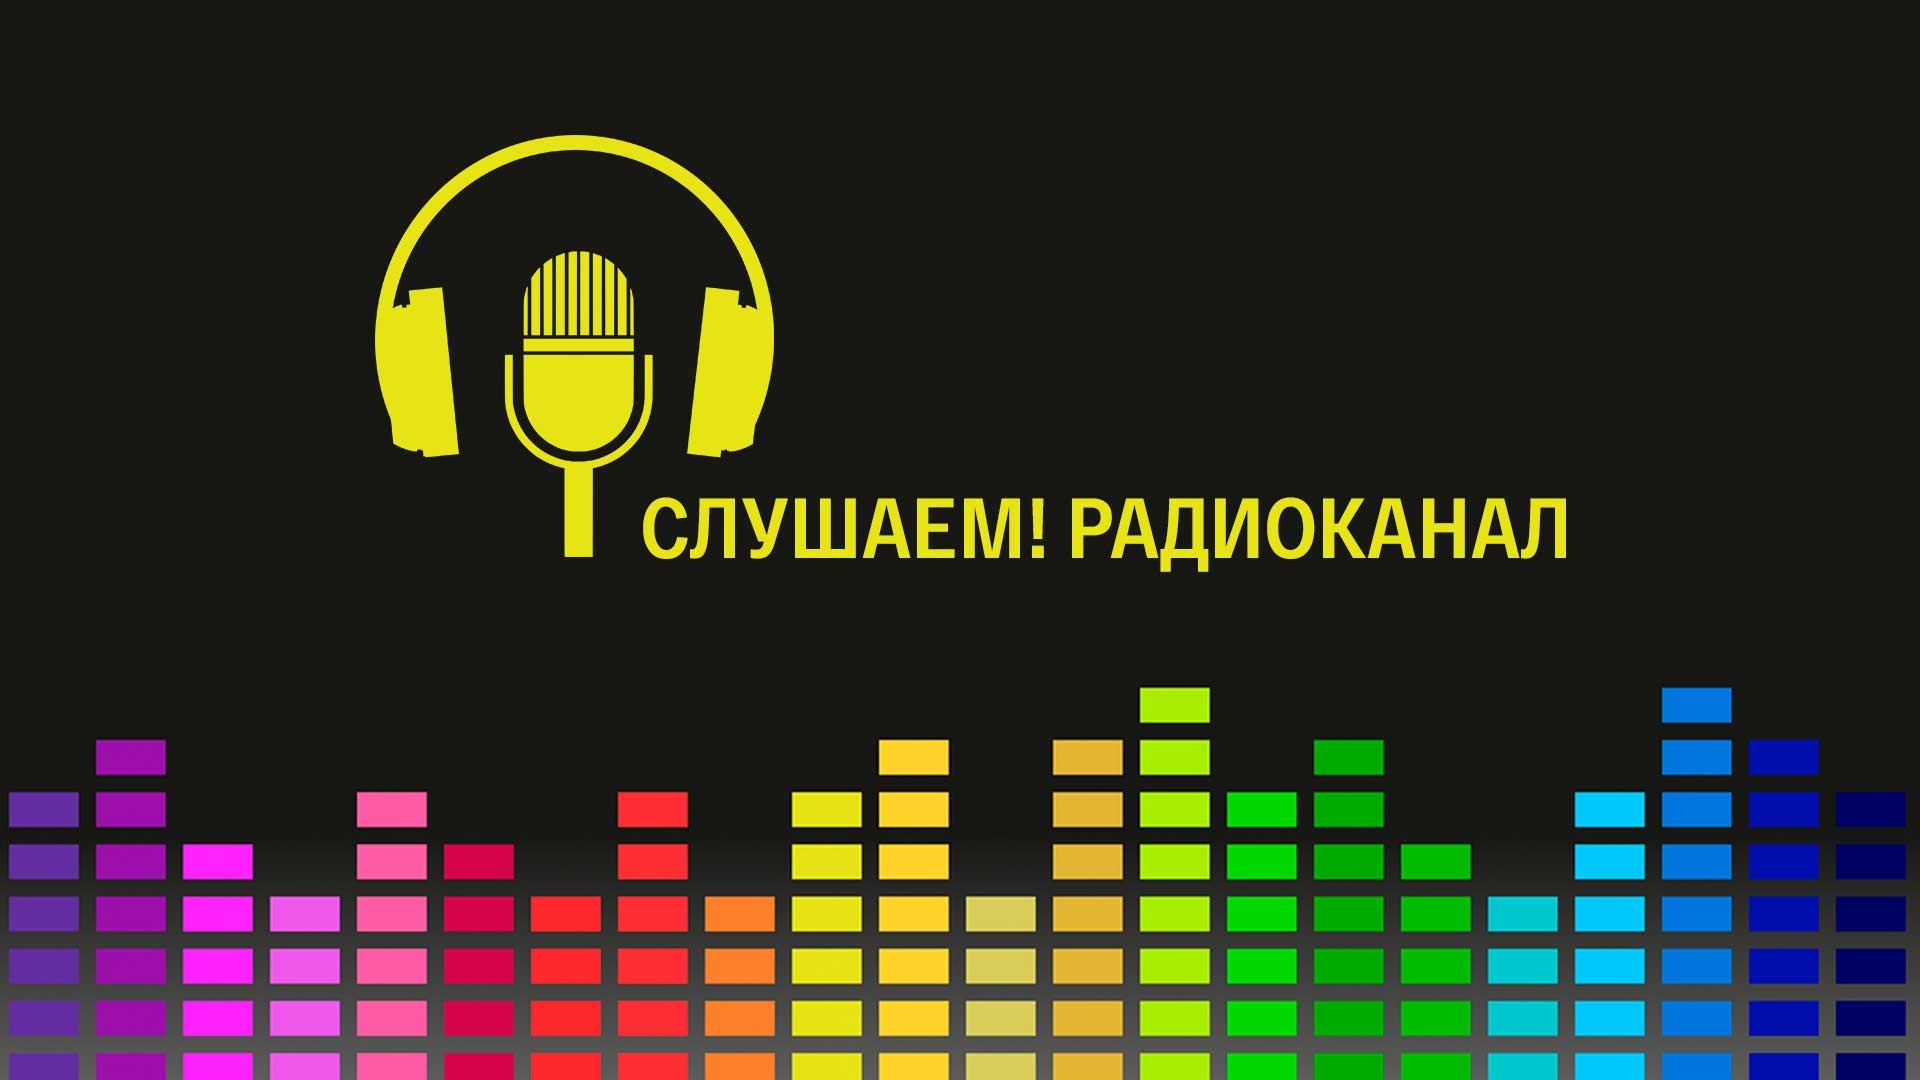 Г.Г. Слышкин 14.10.2022 выступил в качестве эксперта в программе «Слушаем!» станции «Радио России»